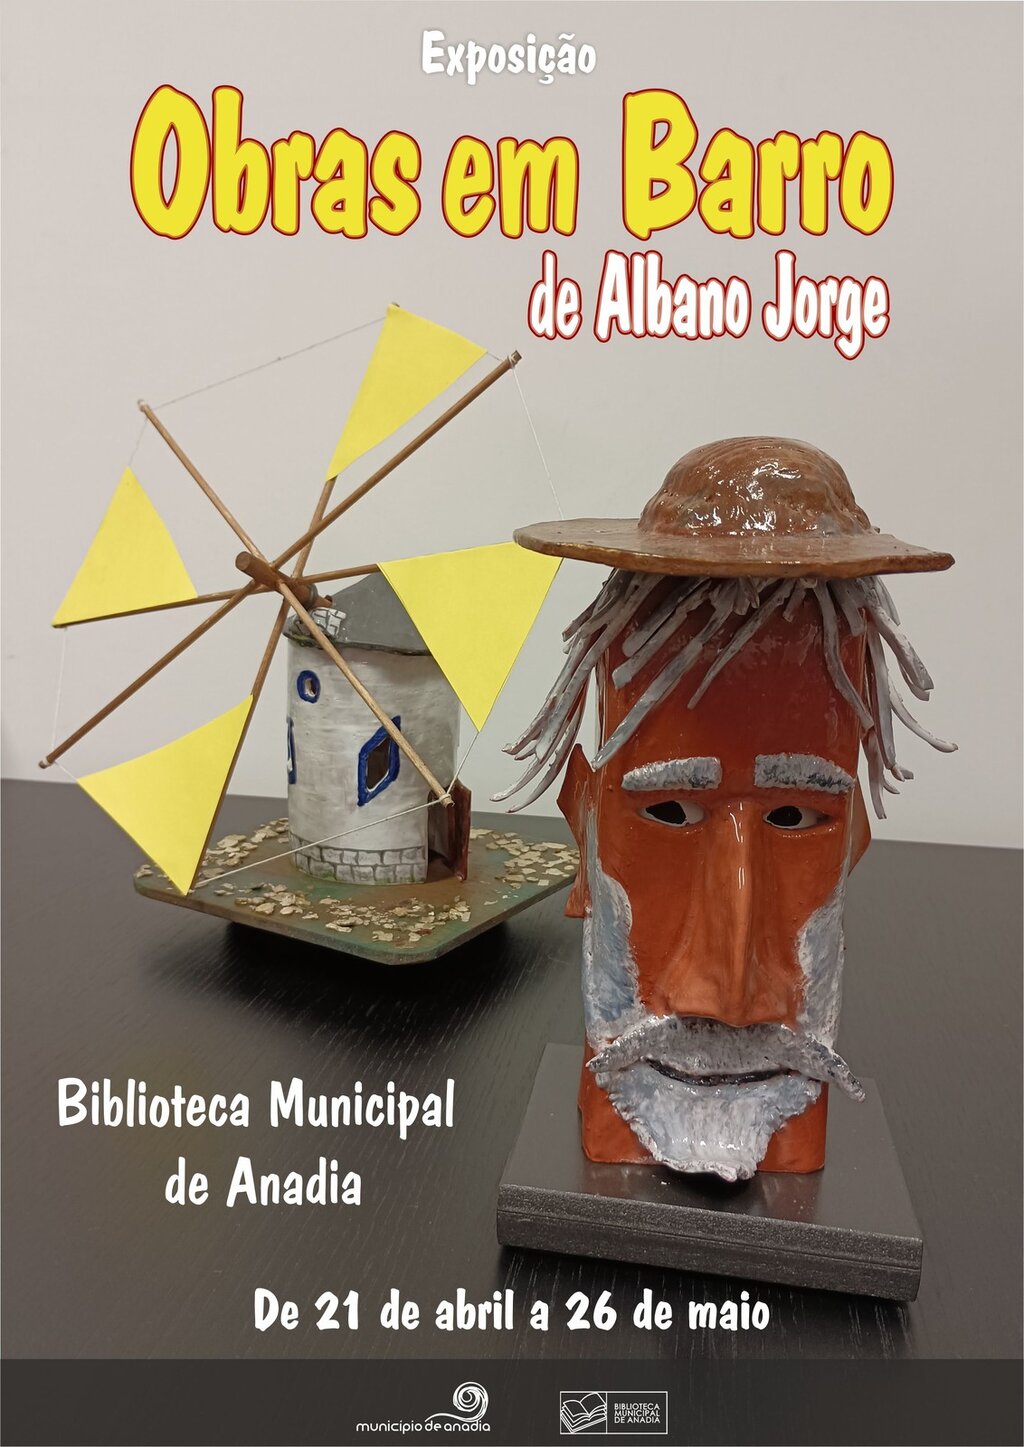 Exposição "Obras em Barro" de Albano Jorge